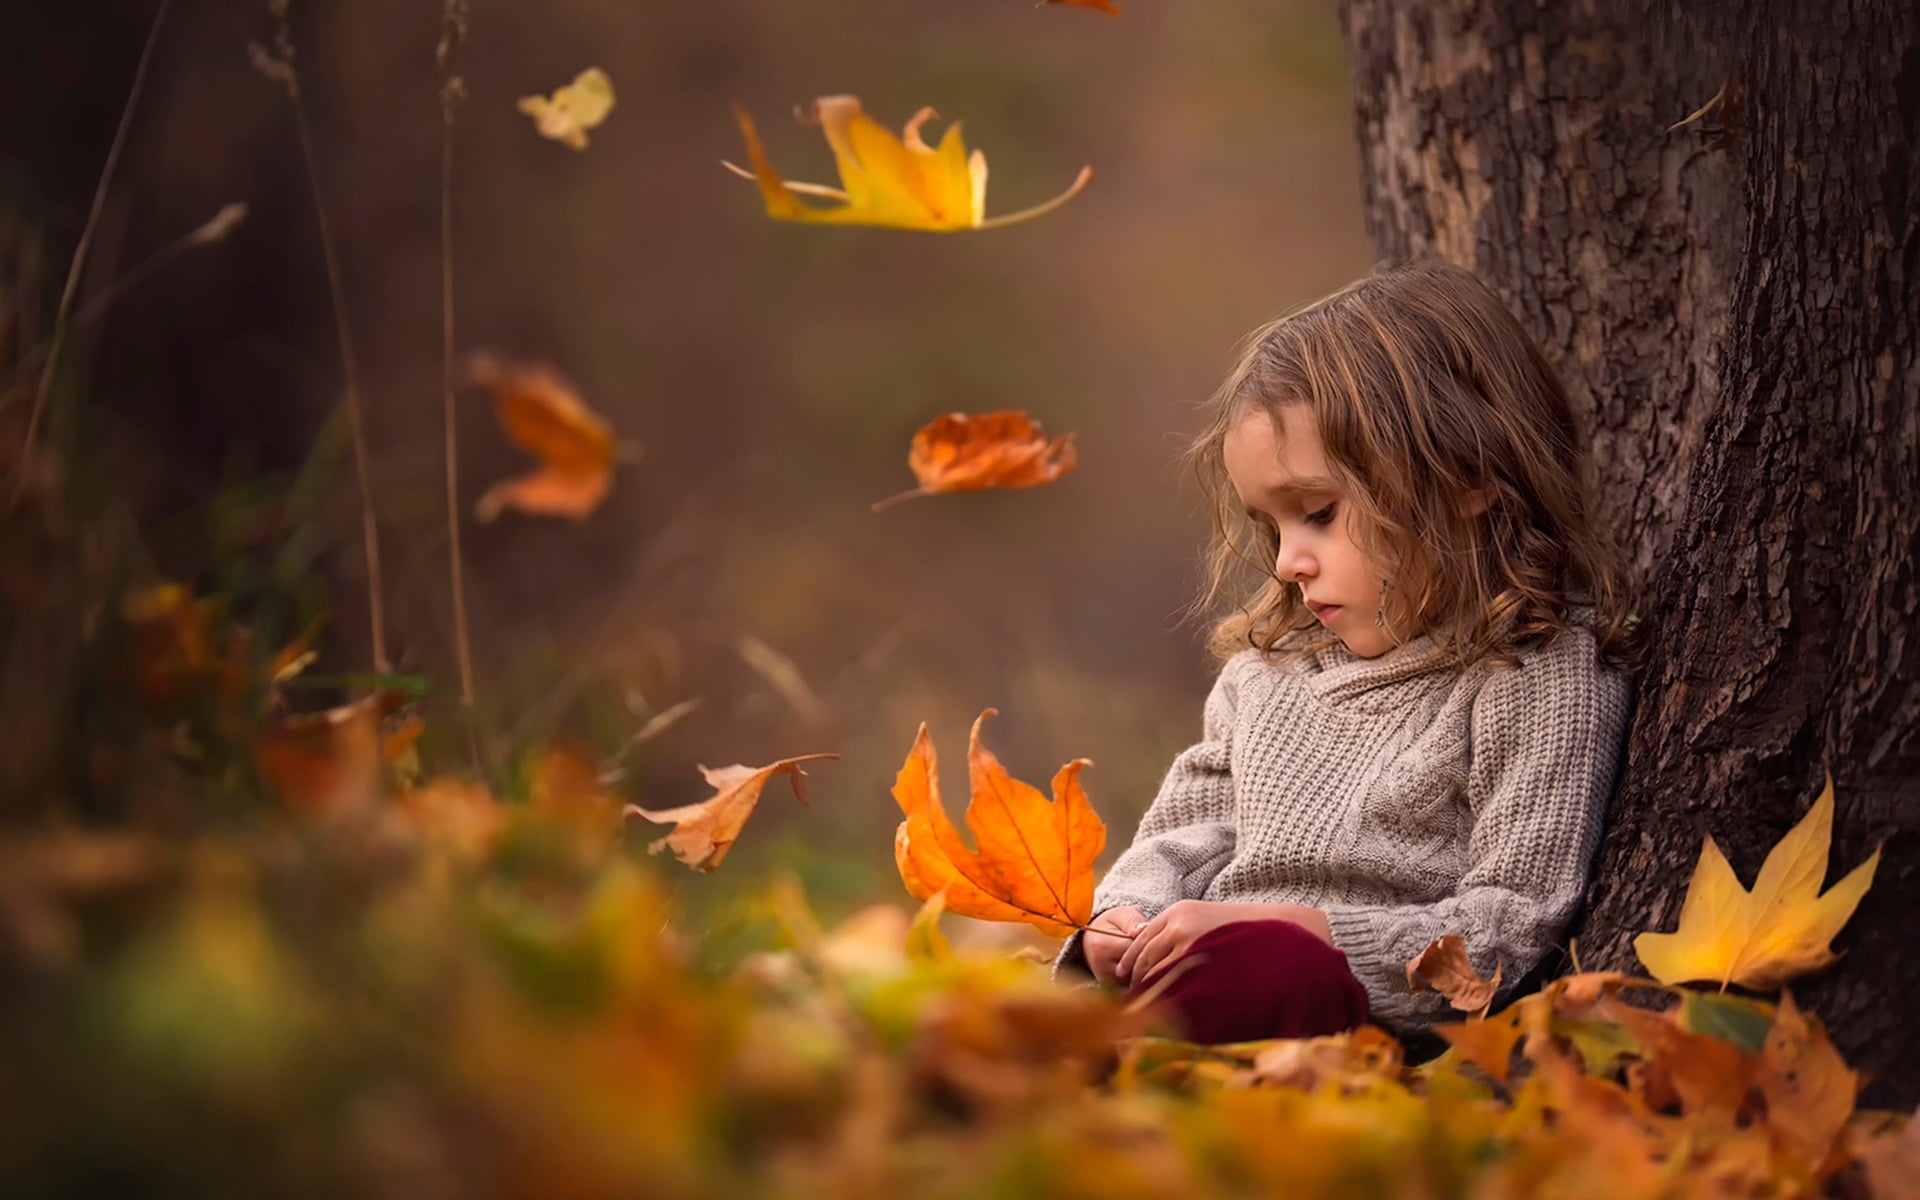 Sad Girl In Autumn - HD Wallpaper 